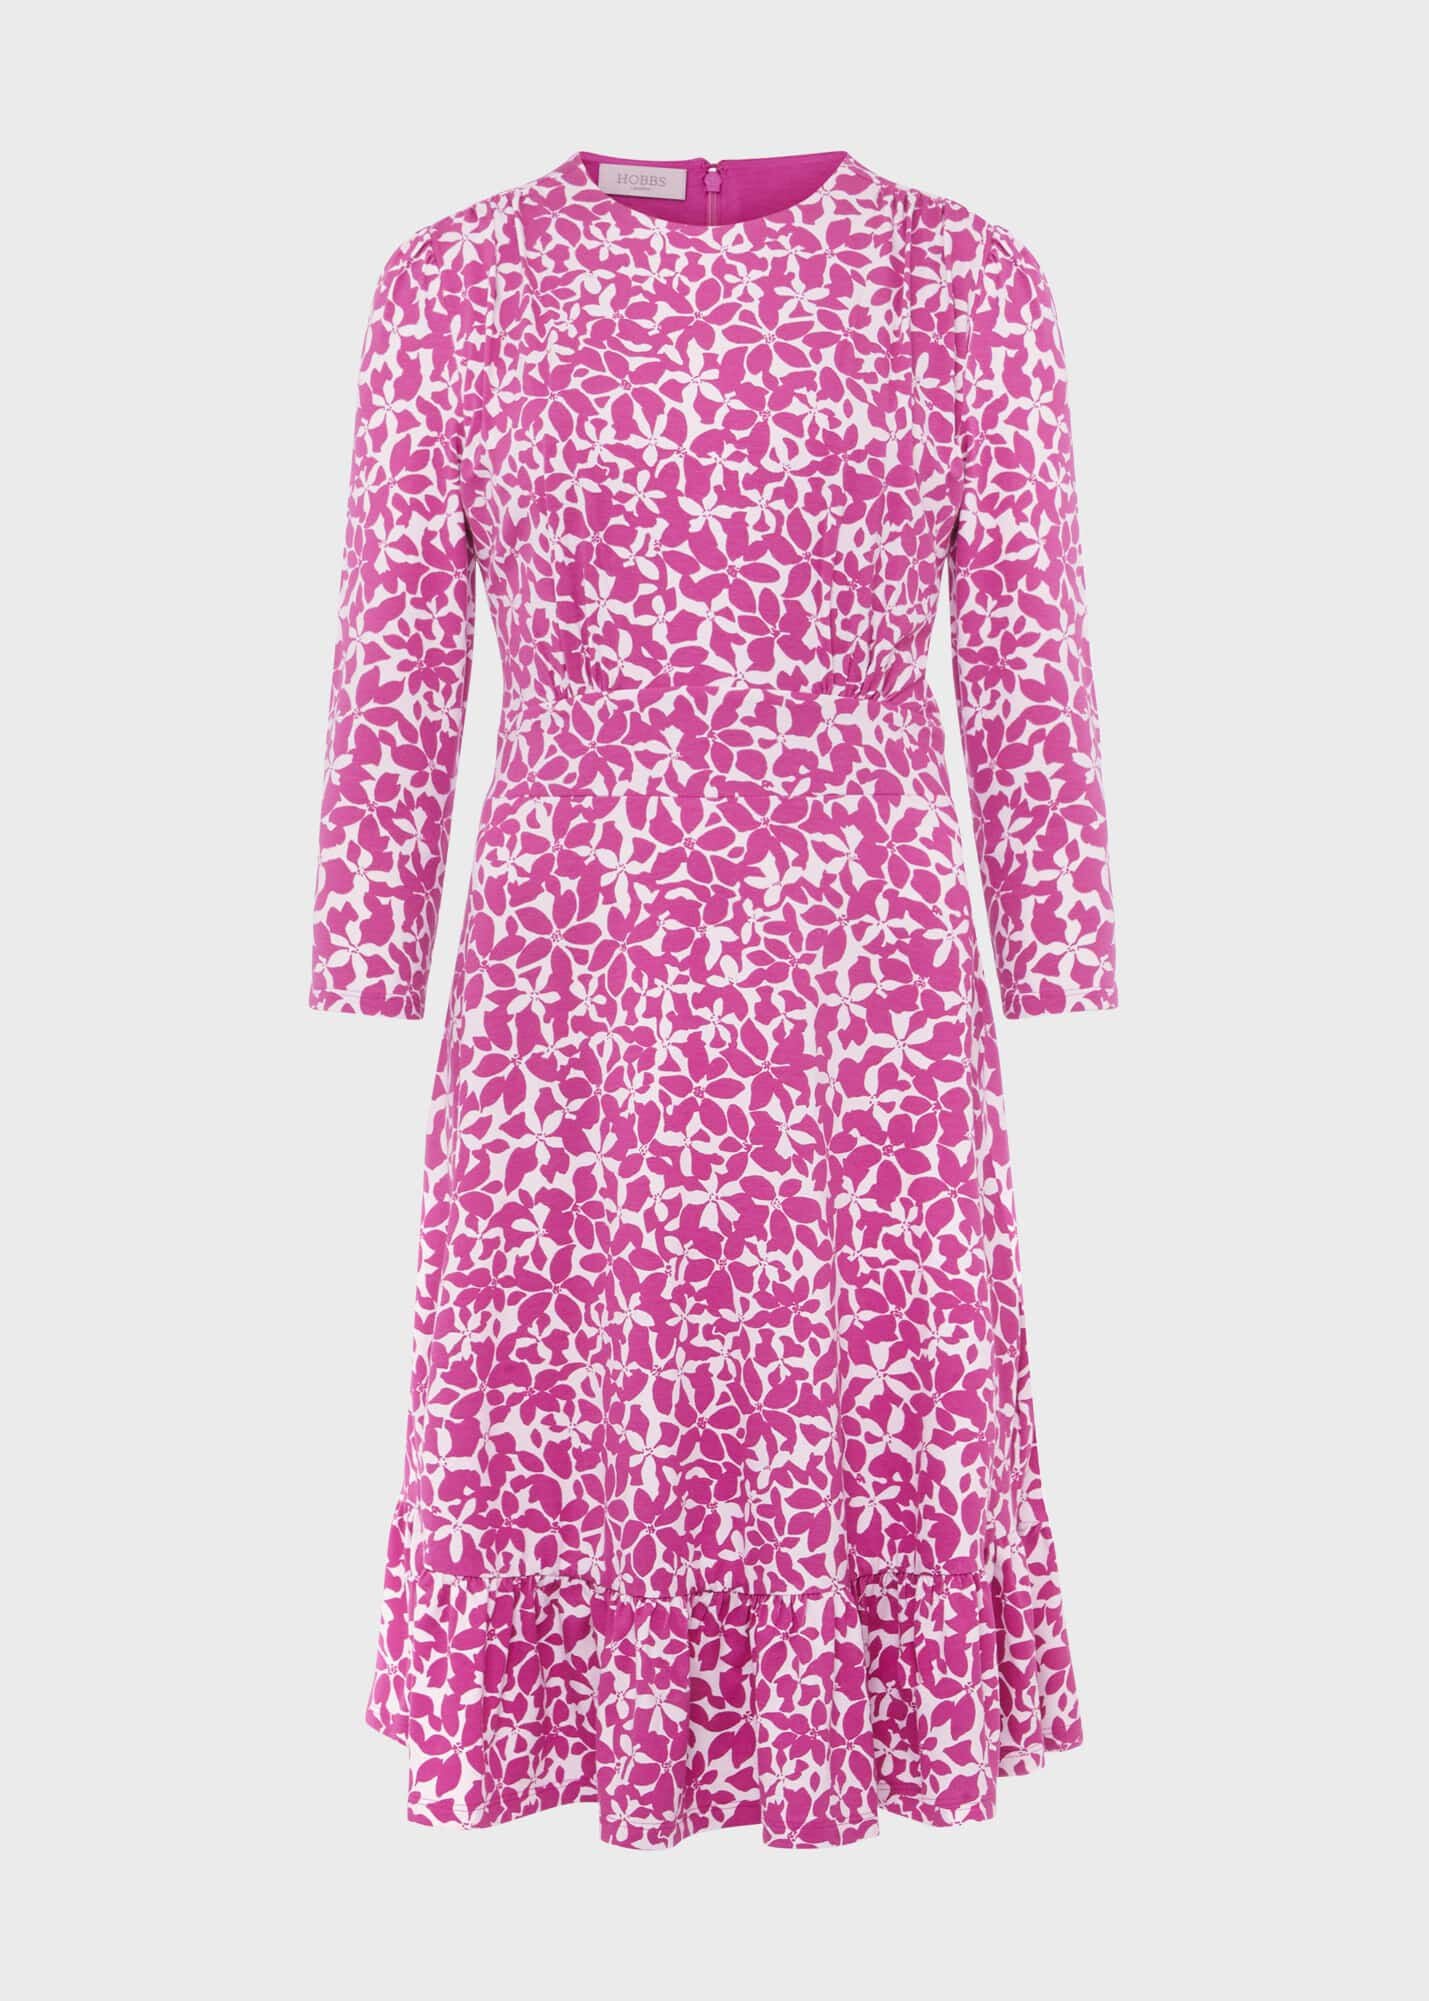 Ami Jersey Dress 0223/5573/3669l00 Pink-Multi